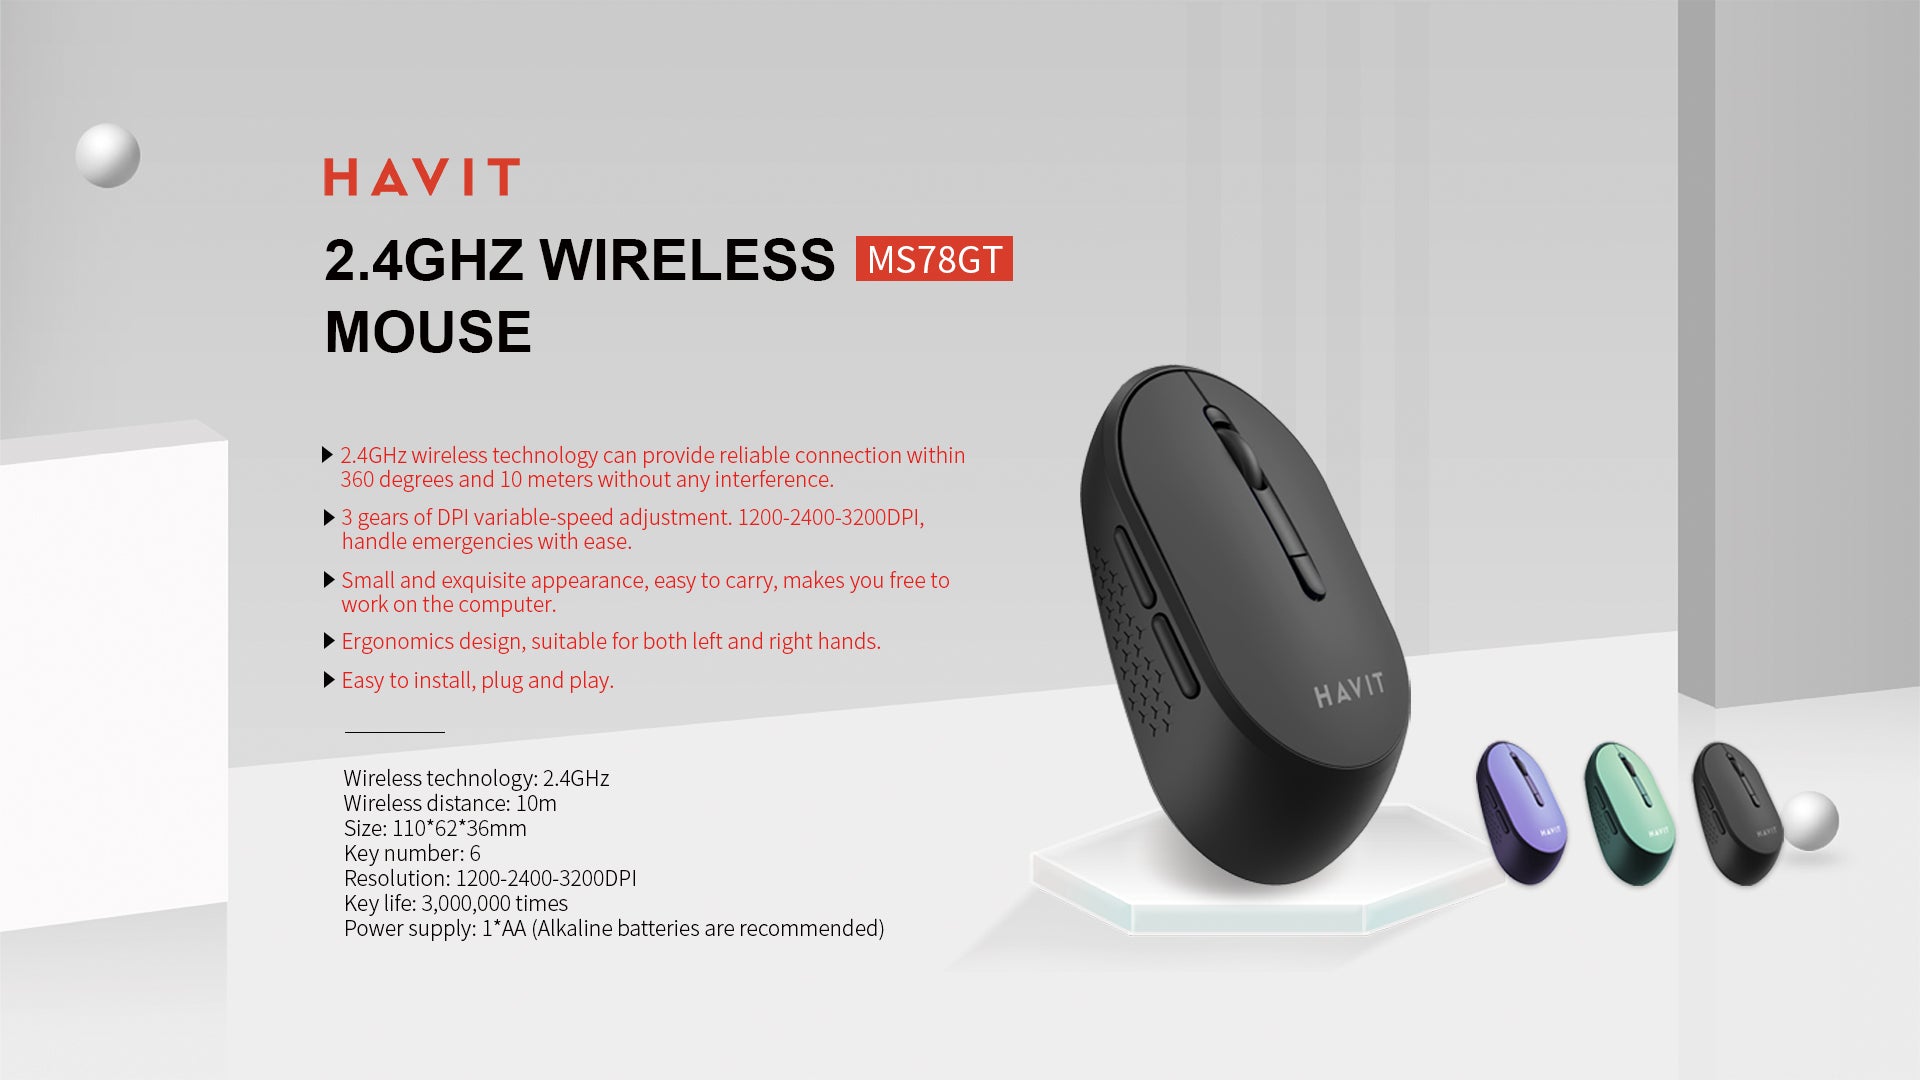 MS78GT Wireless mouse description